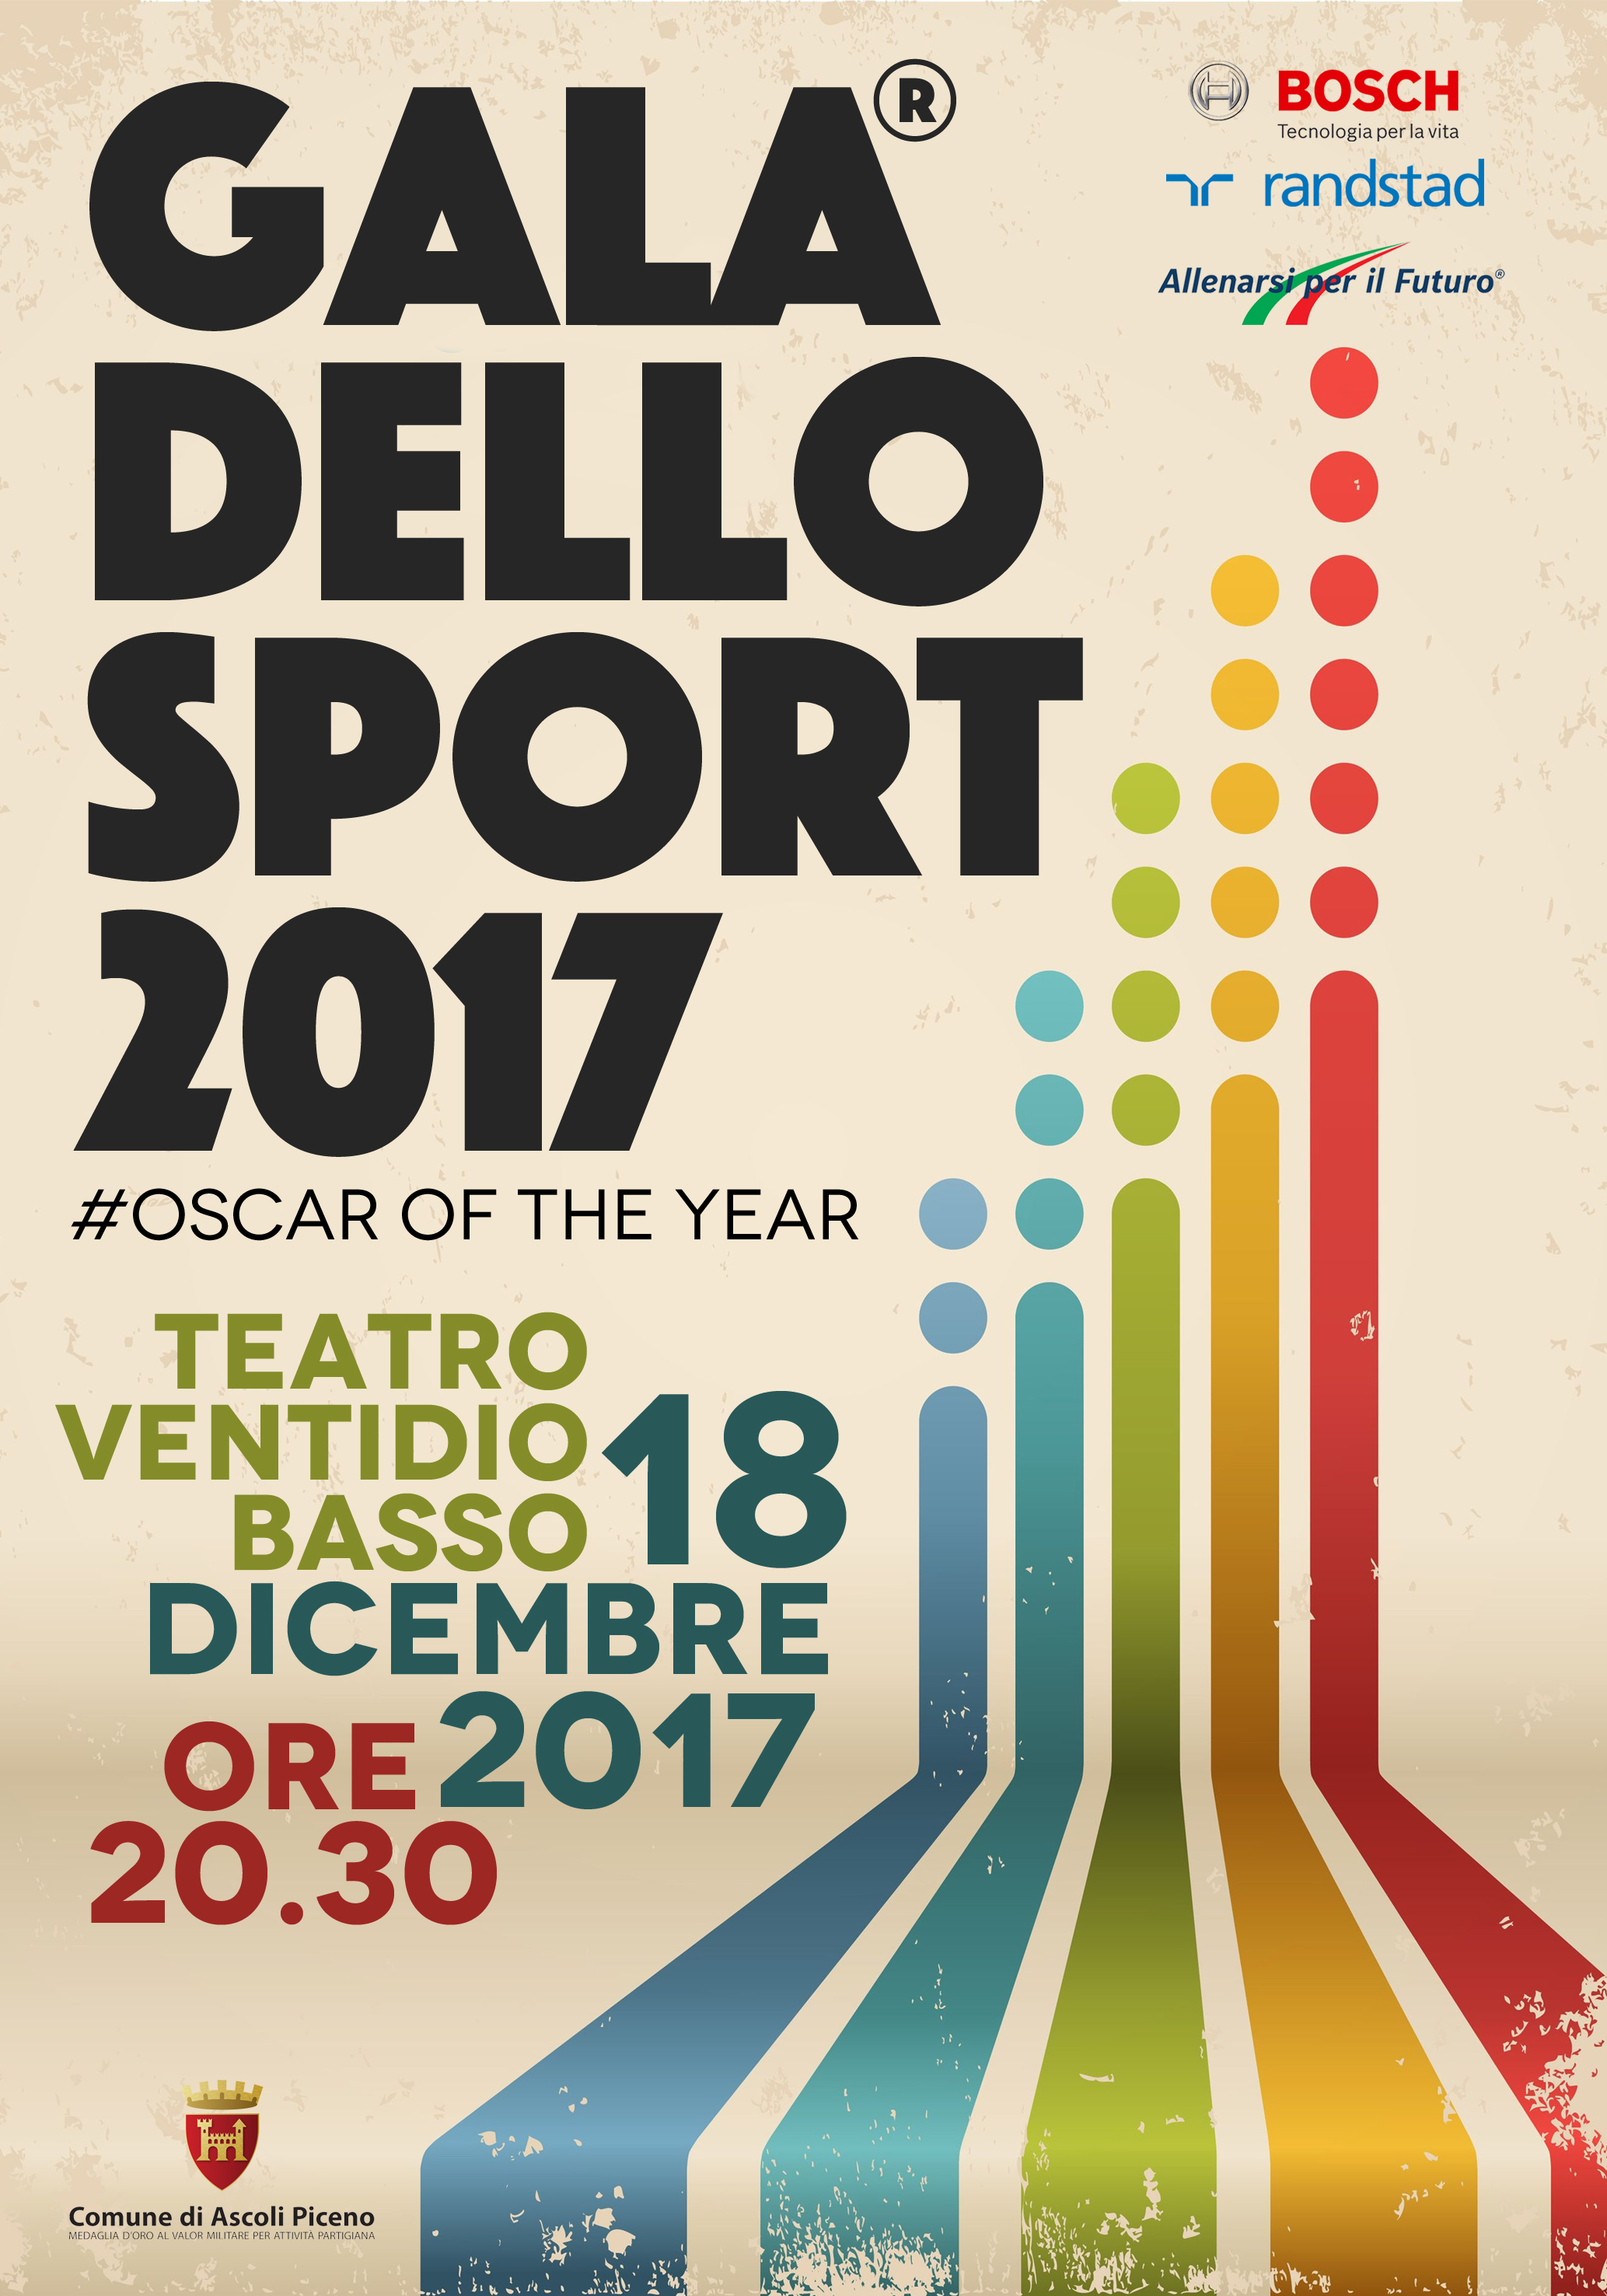 Galà dello Sport 2017